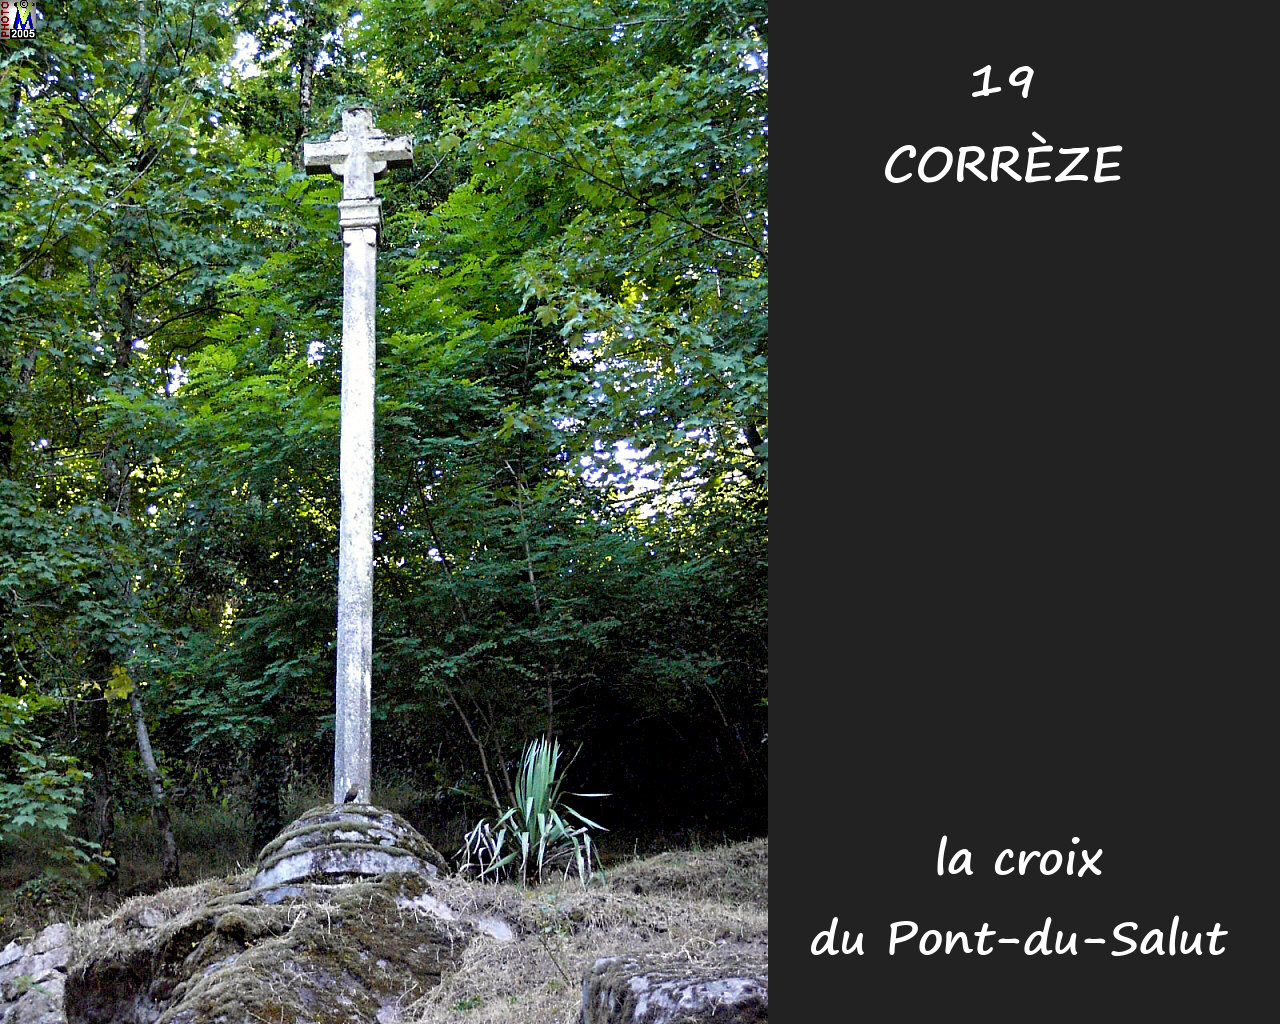 19CORREZE CROIX 100.jpg